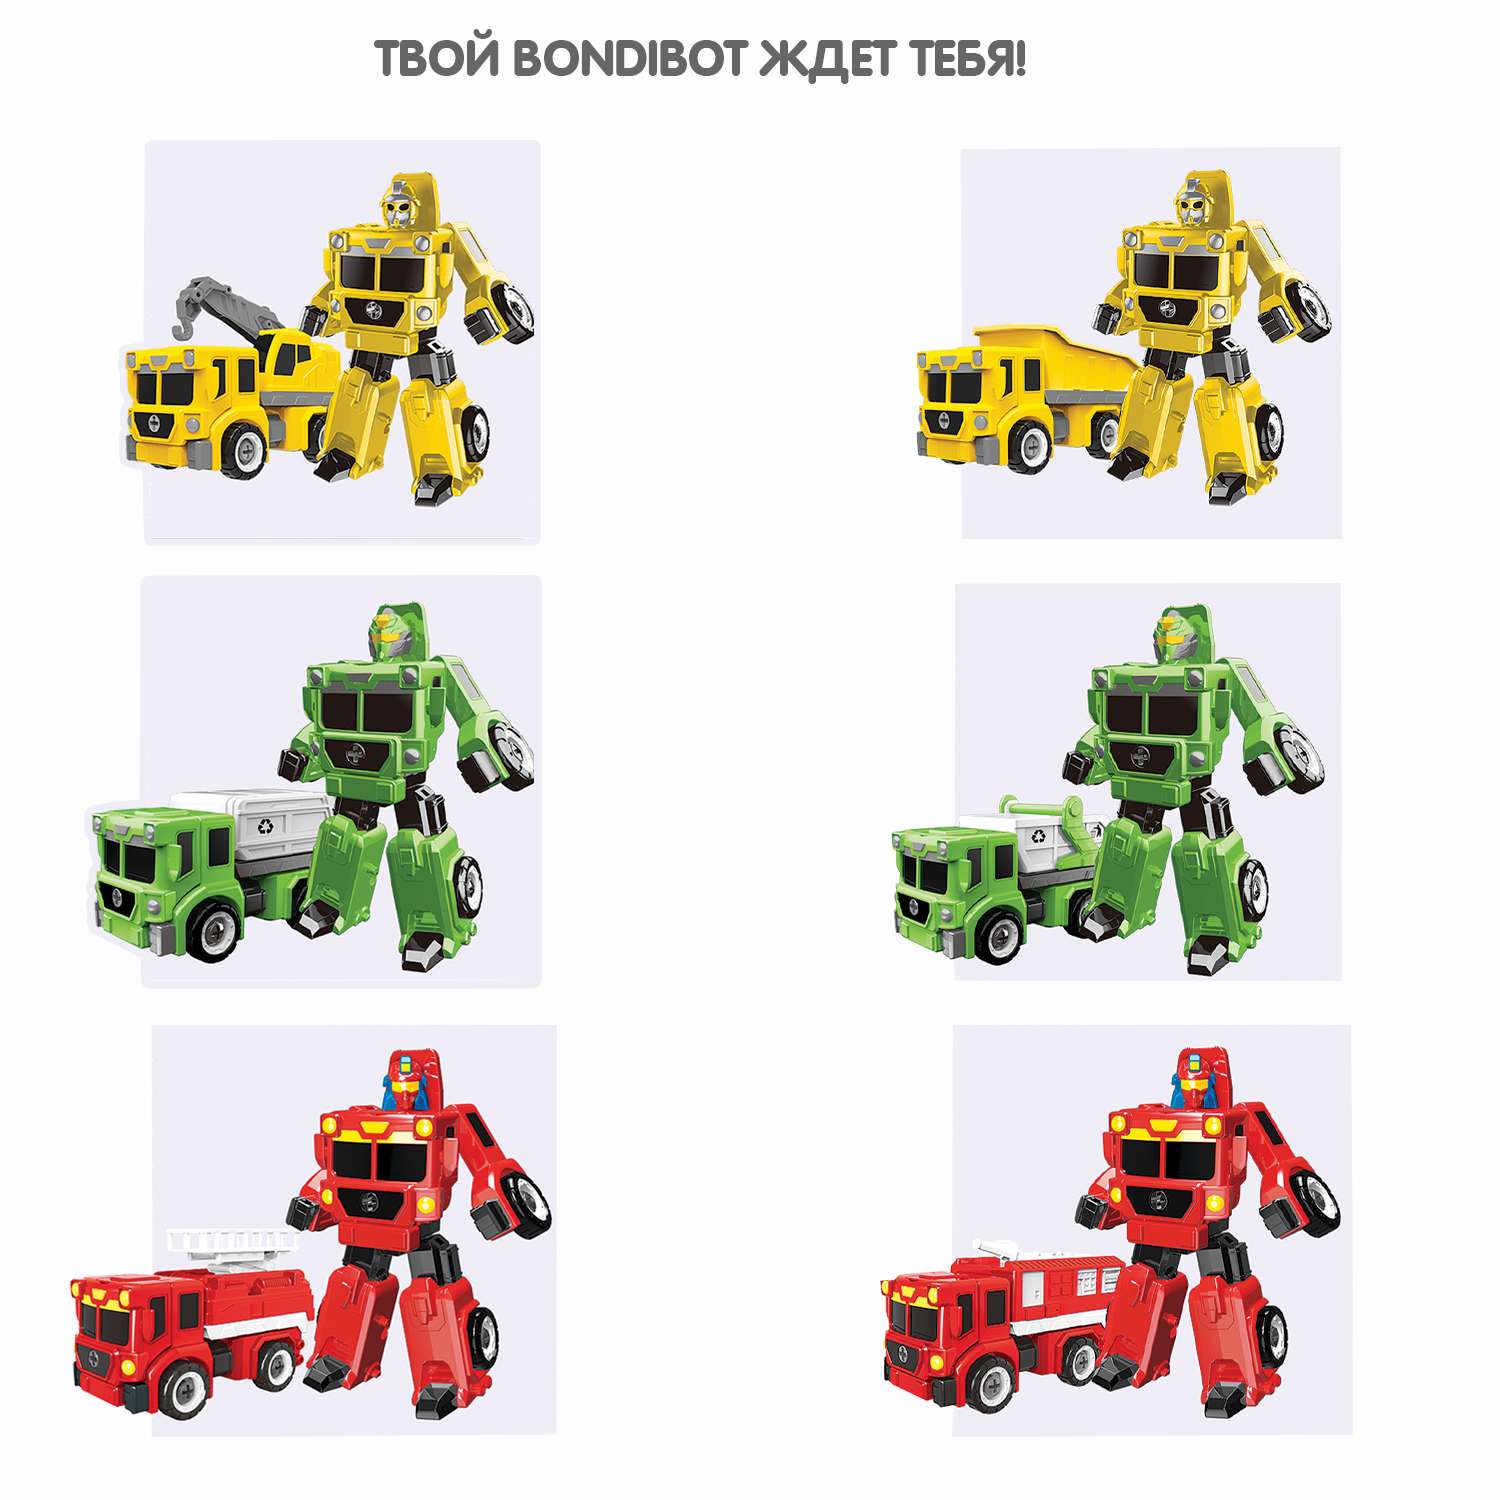 Трансформер-конструктор BONDIBON Bondibot Робот-автокран строительный 2 в 1 с отвёрткой - фото 9